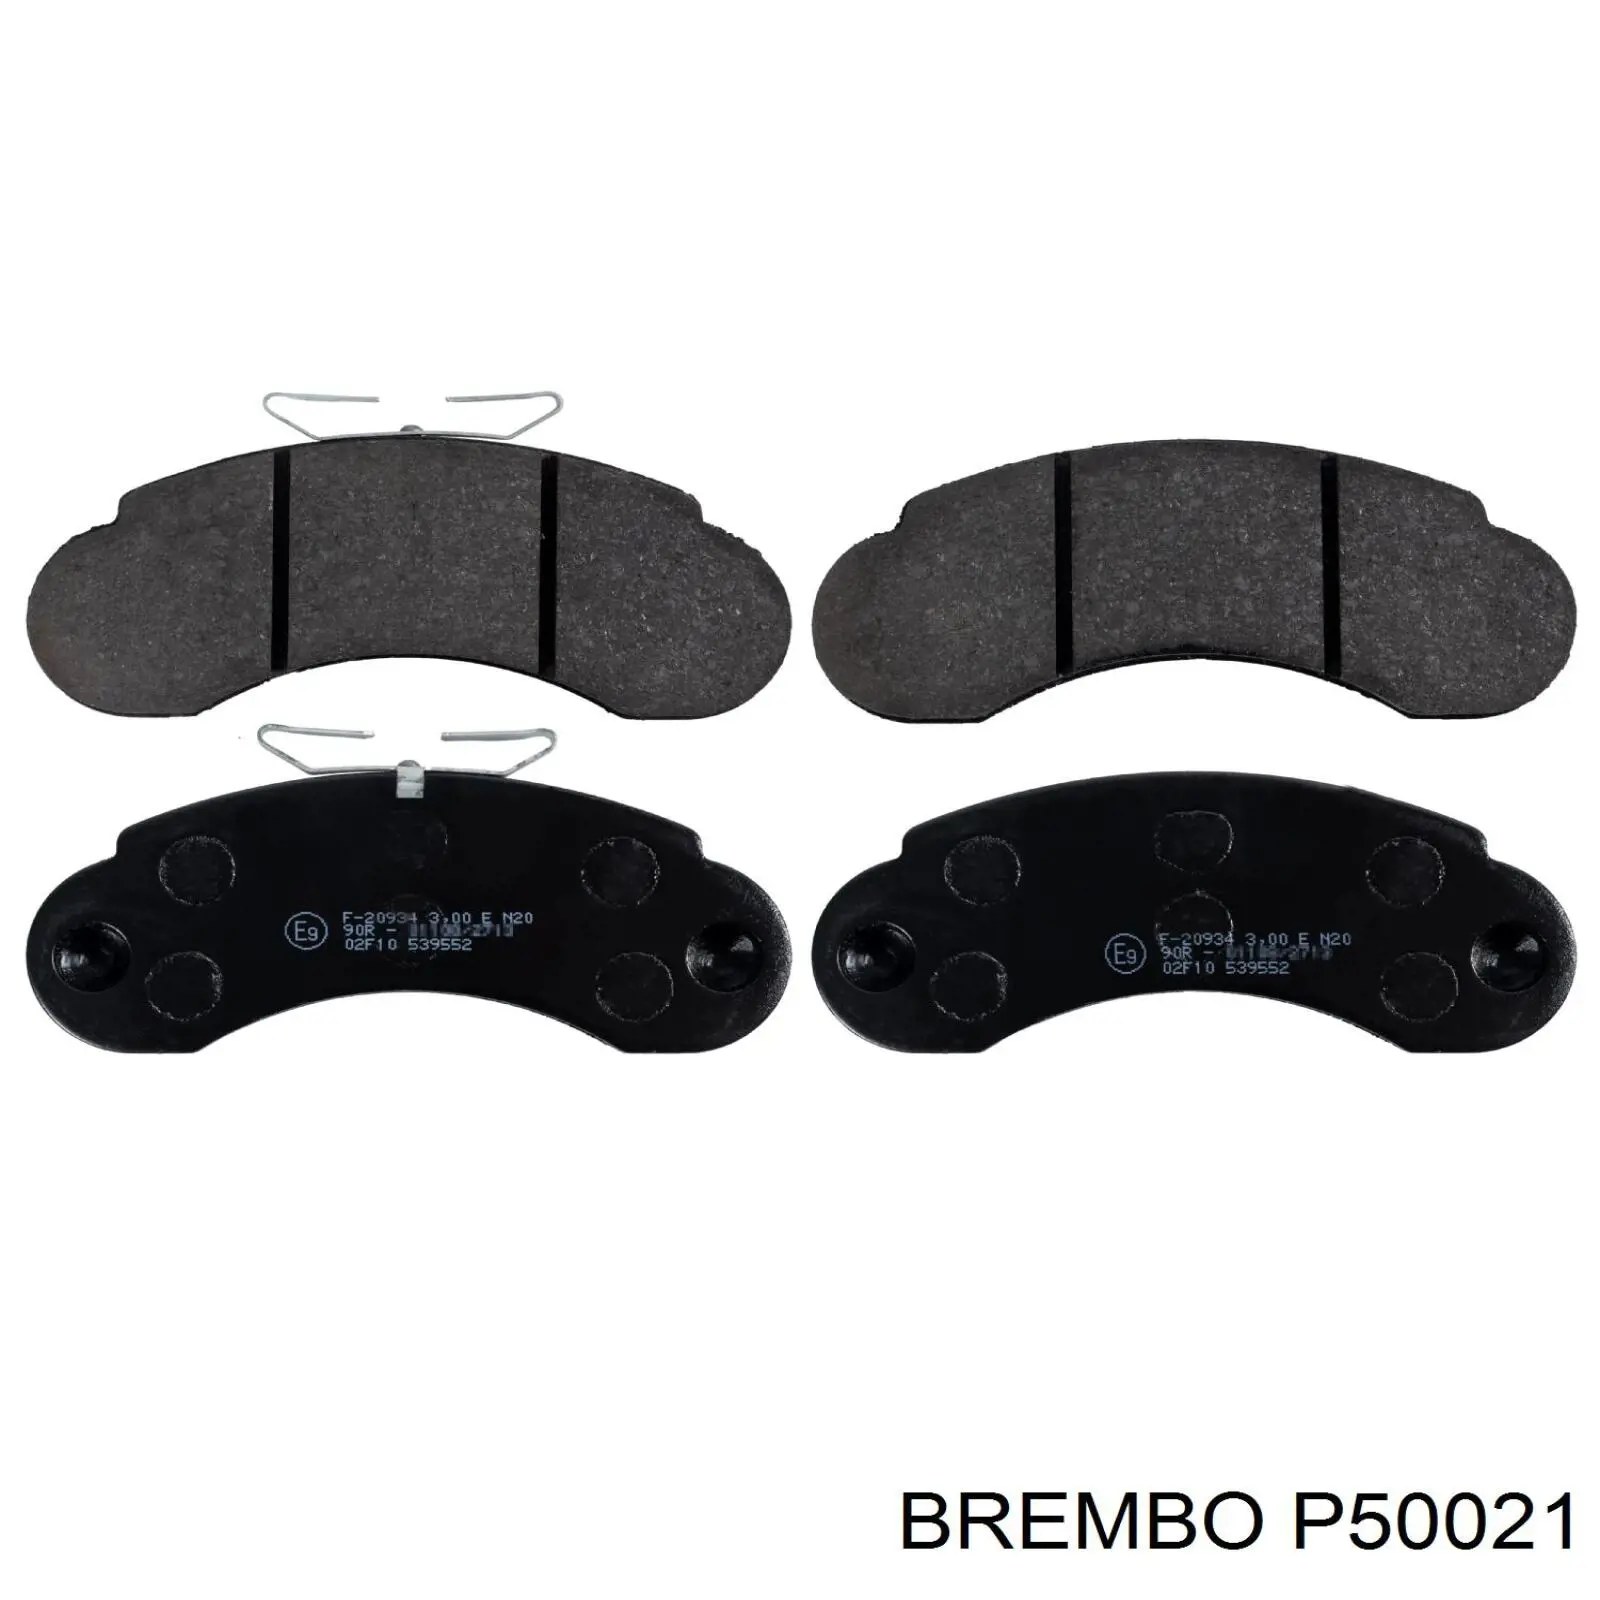 Pastillas de freno delanteras P50021 Brembo